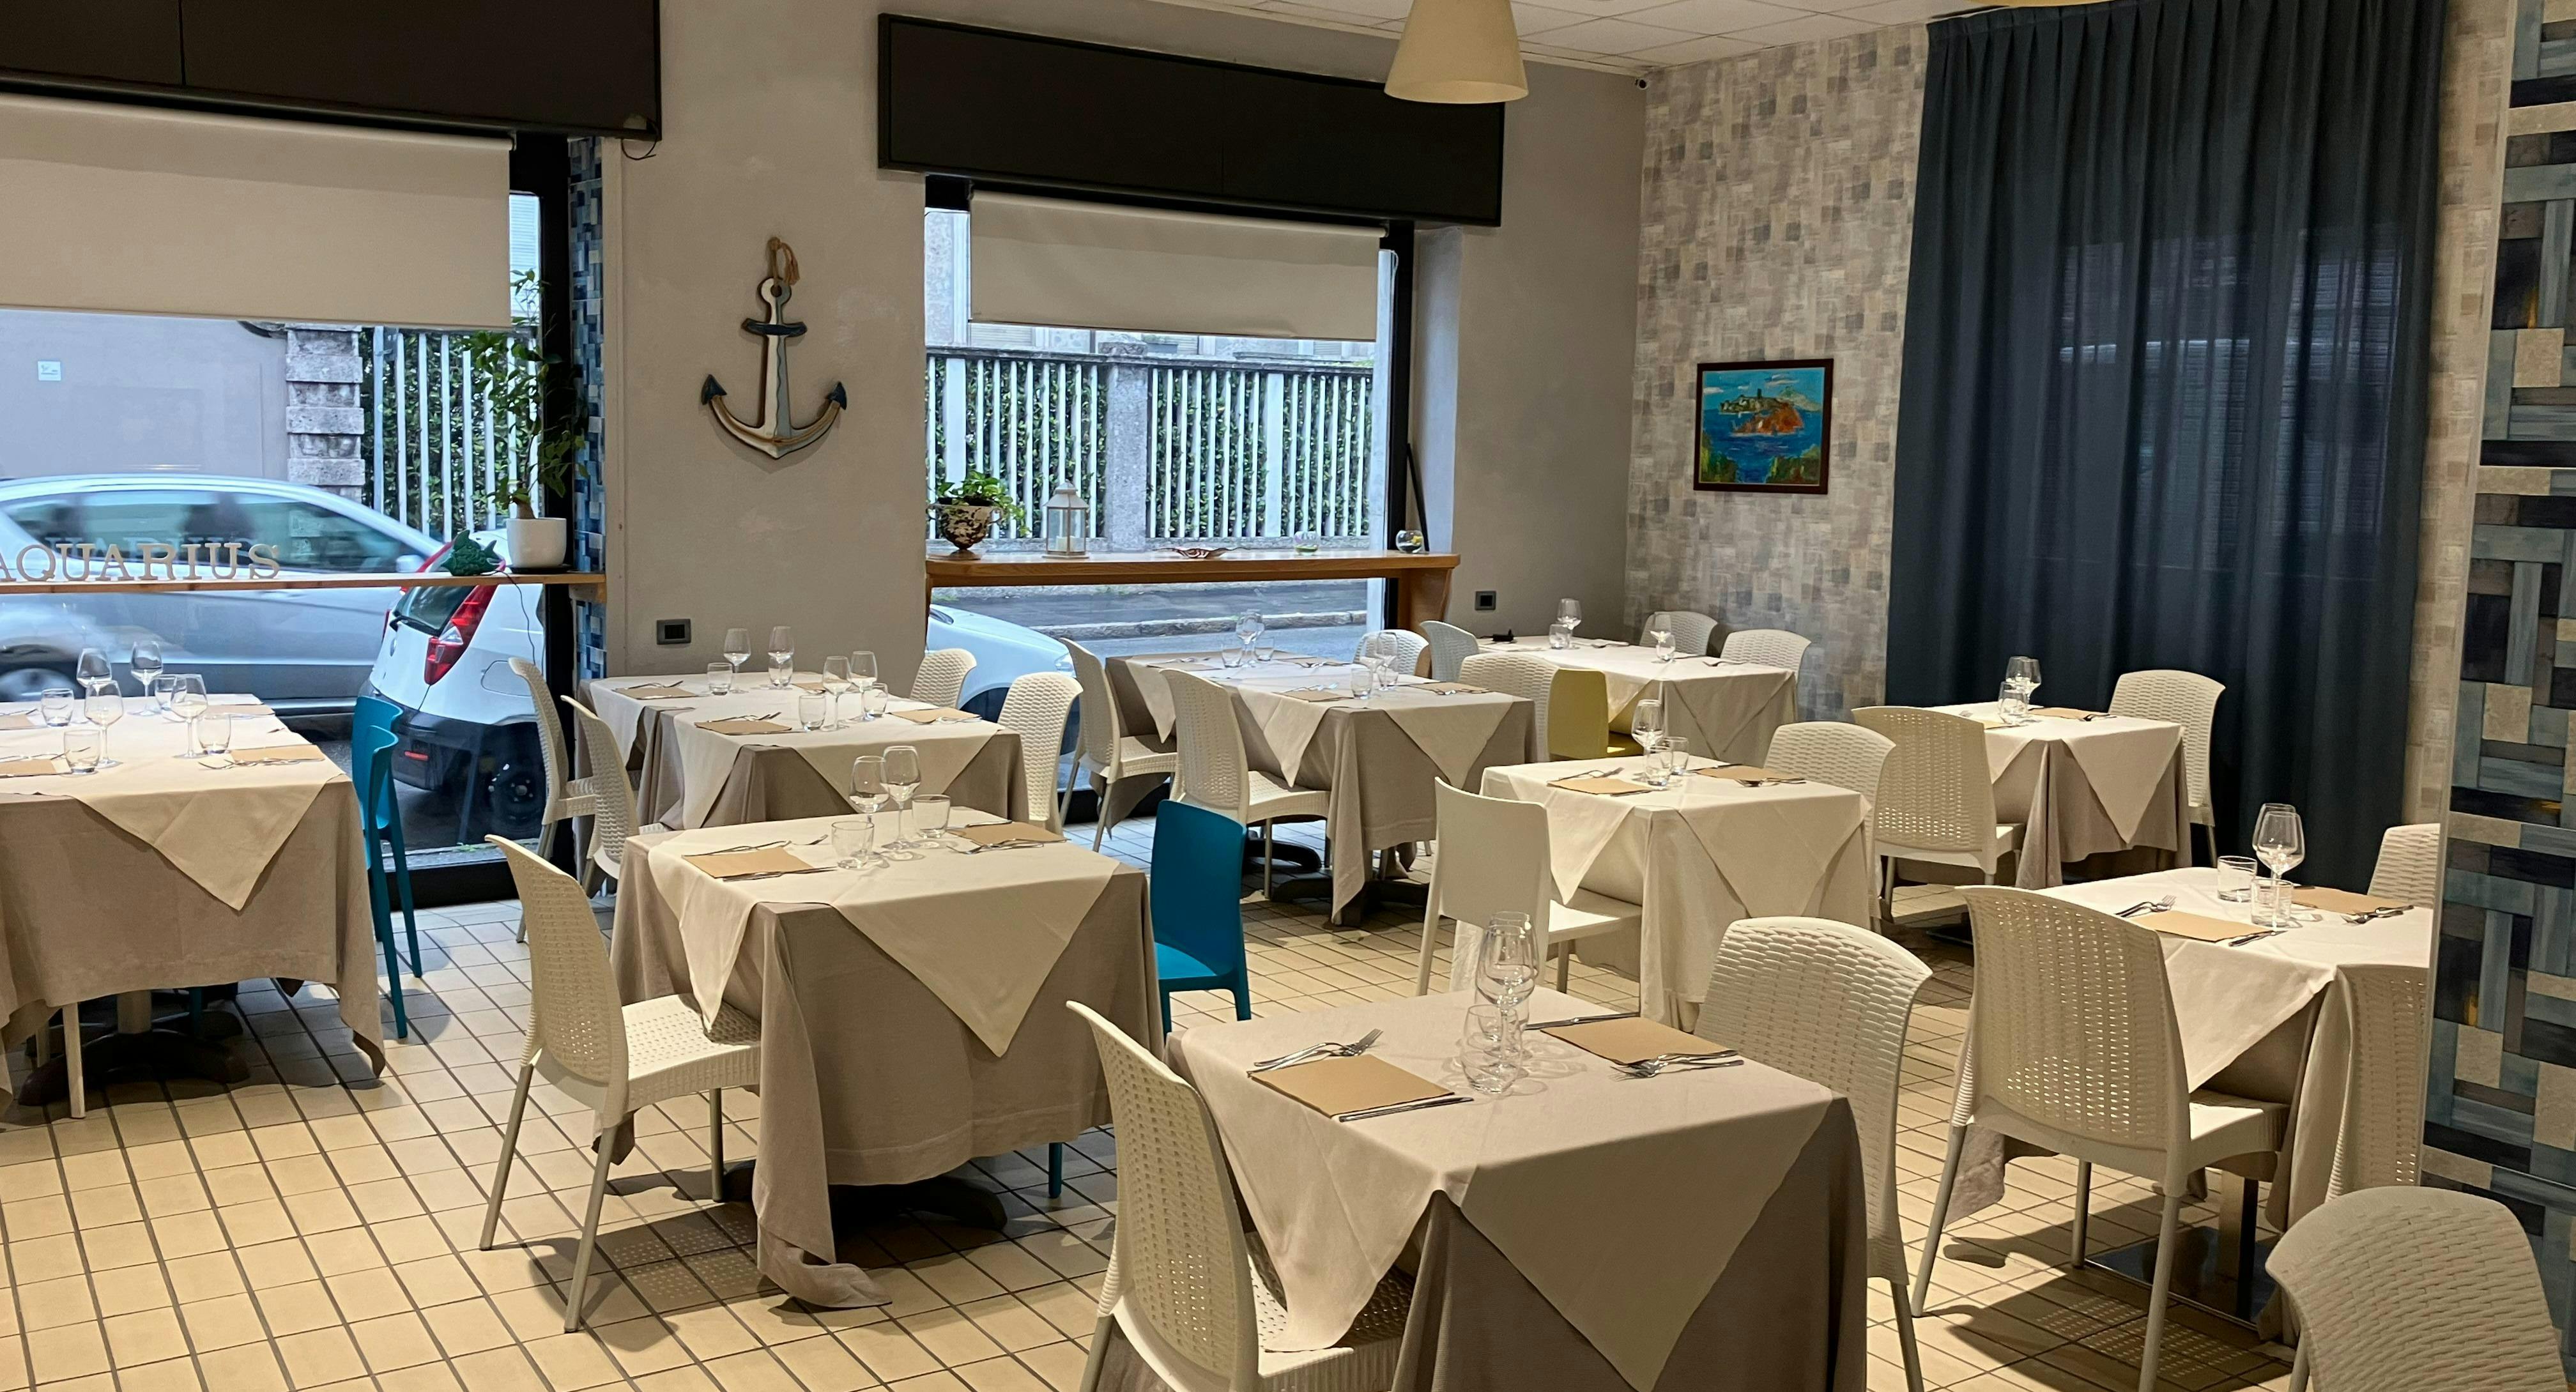 Photo of restaurant Ristorante Aquarius in Monza, Monza et Brianza